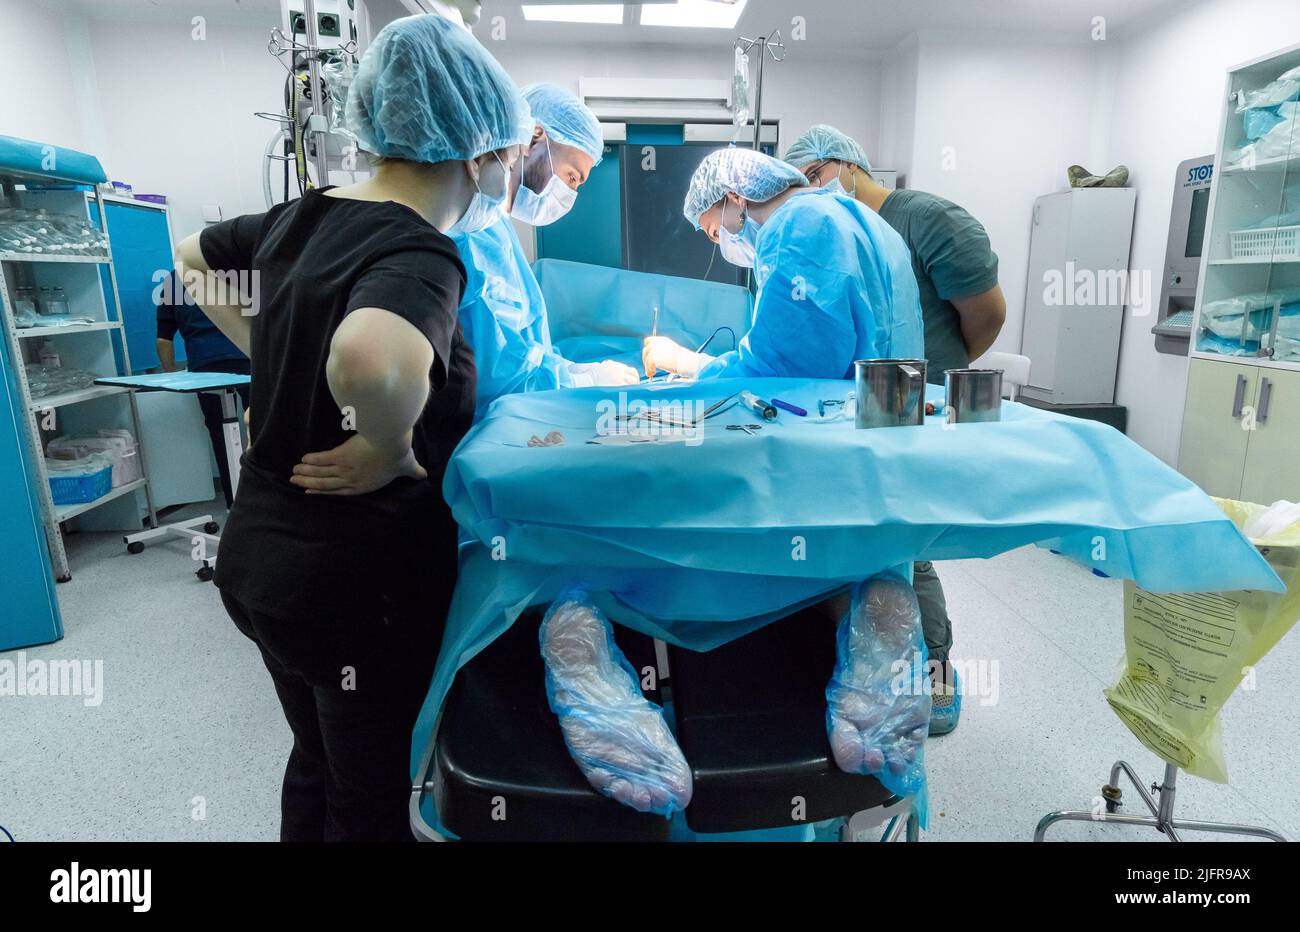 Moscou. Russie. 24 décembre 2021. Une équipe de chirurgiens effectue une chirurgie de coloproctologie sur l'anus d'un patient. Banque D'Images